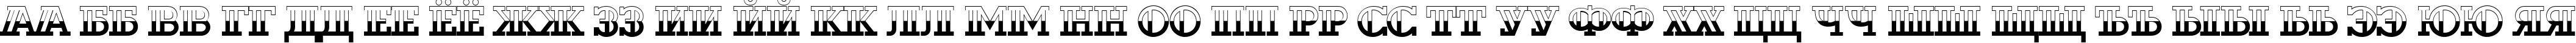 Пример написания русского алфавита шрифтом a_DexterB&W